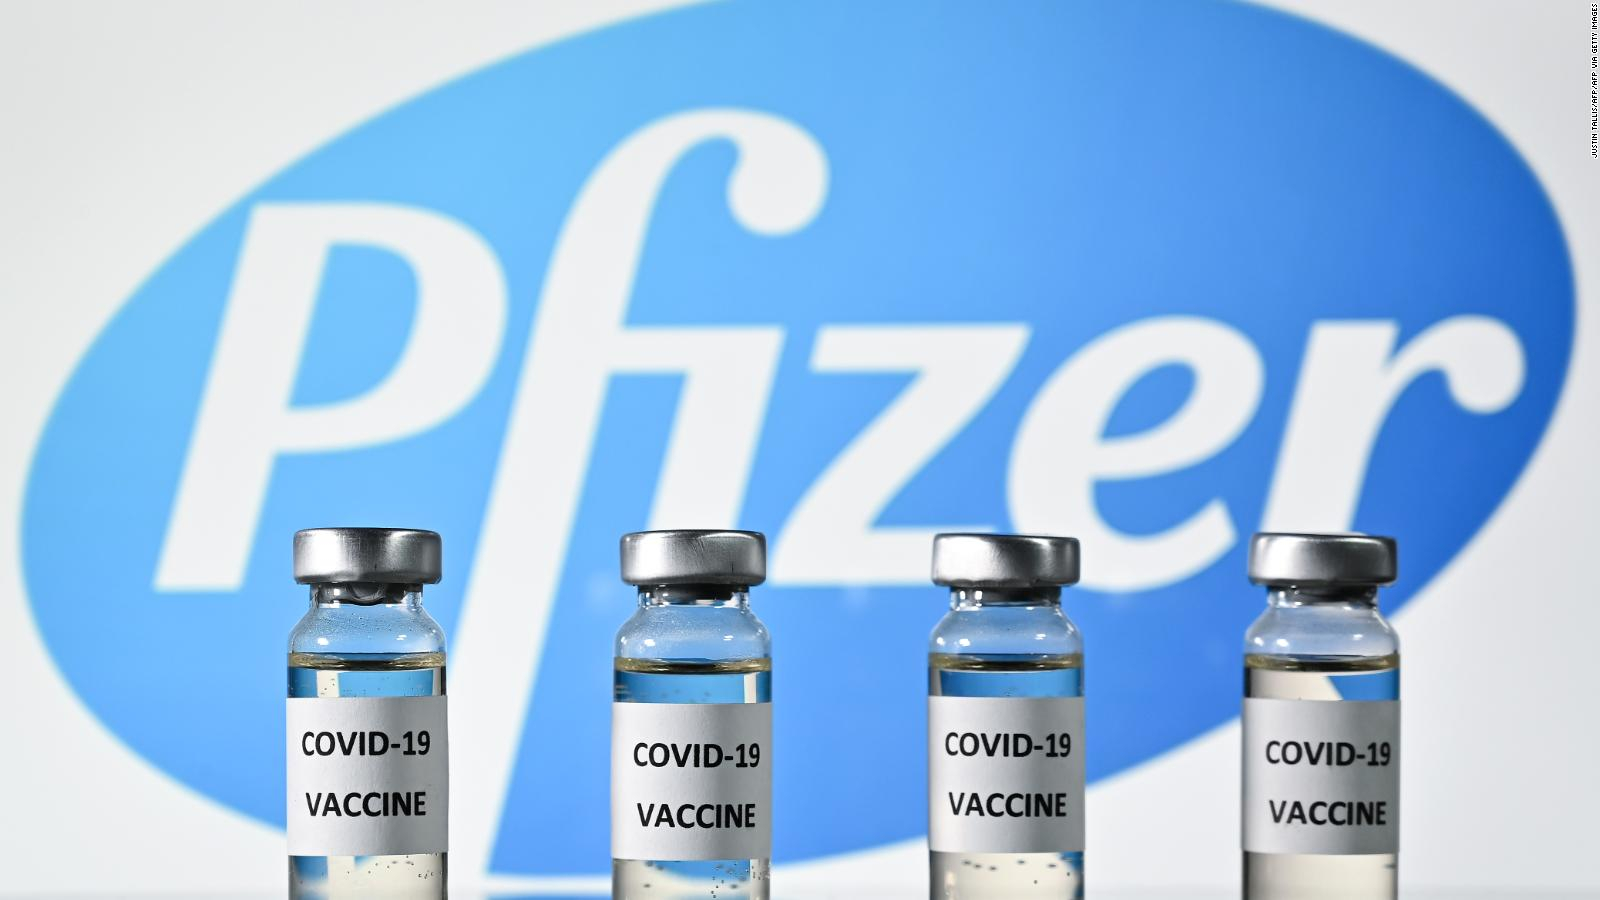 EEUU inicia compleja distribución de la vacuna del COVID-19 en todo el país